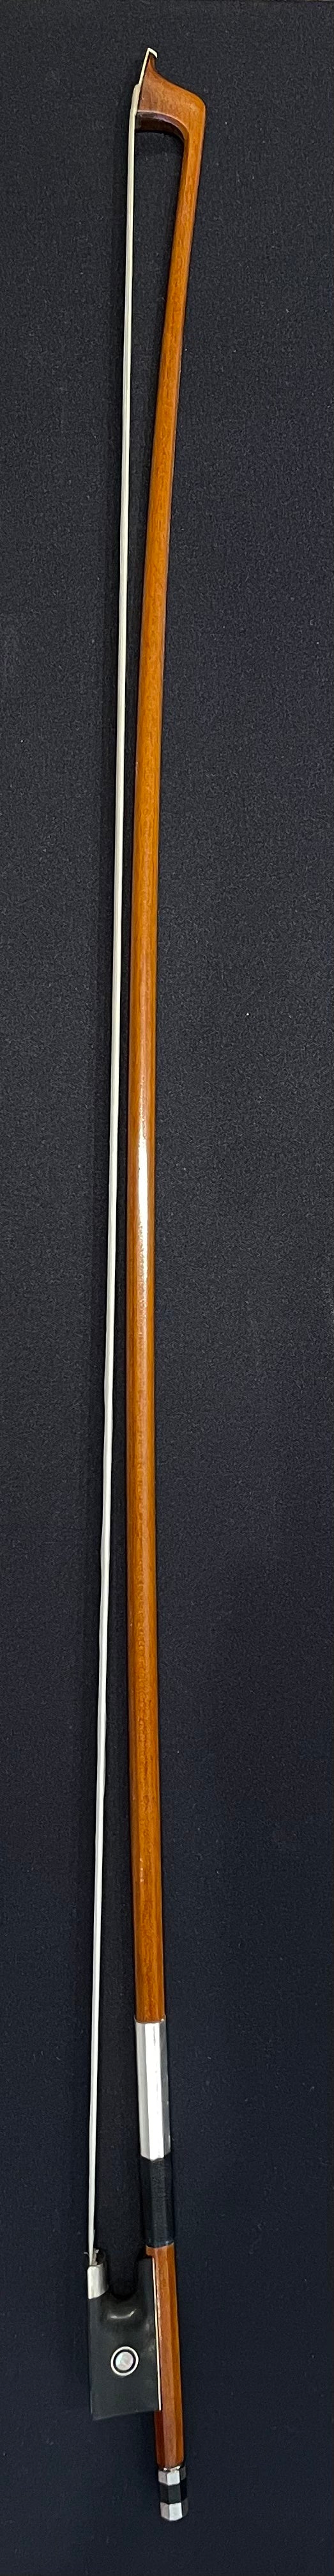 4/4 Violin Bow - TZ Wood Model